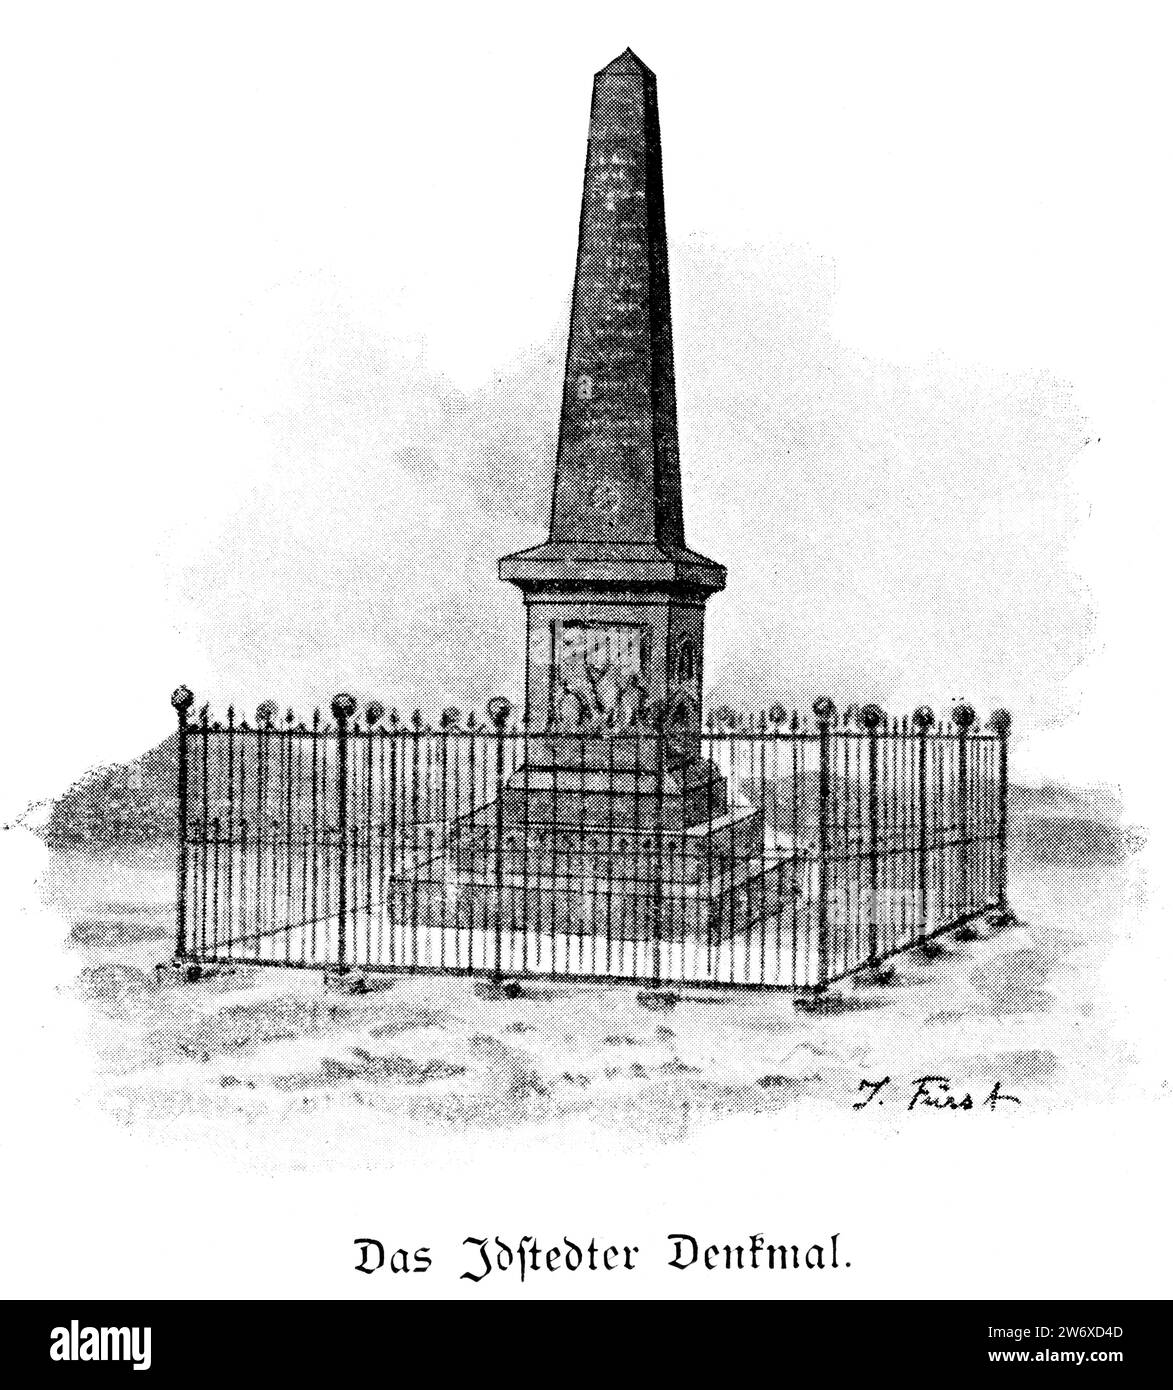 Le monument Idstedt, commémorant le soulèvement de 1848 dans le Schleswig-Holstein, dukrights Schleswig et Holstein restent danois, Allemagne du Nord, Europe Banque D'Images